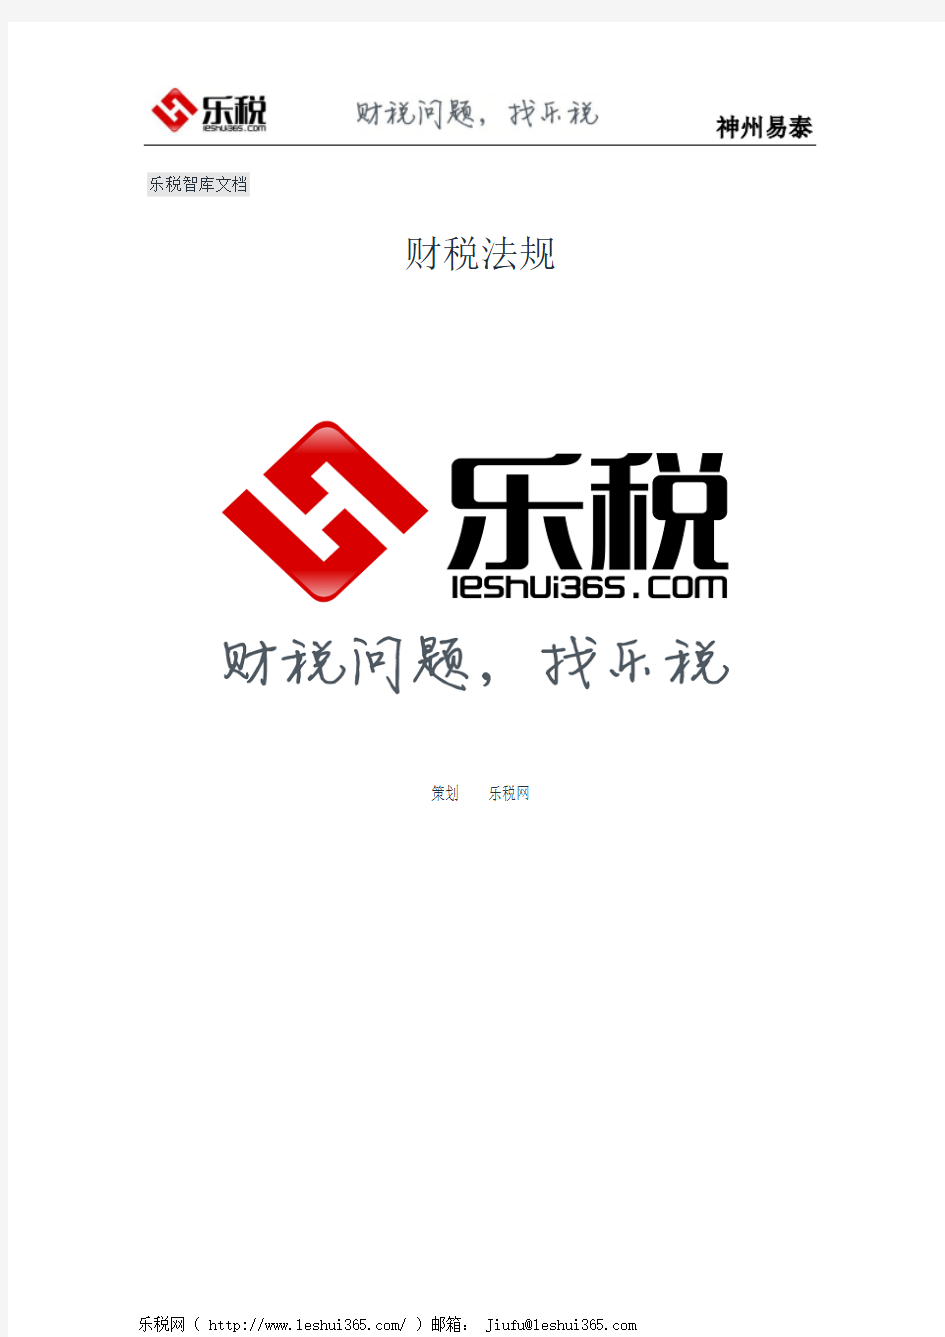 北京市地方税务局关于中华人民共和国国家知识产权局印花税代扣专